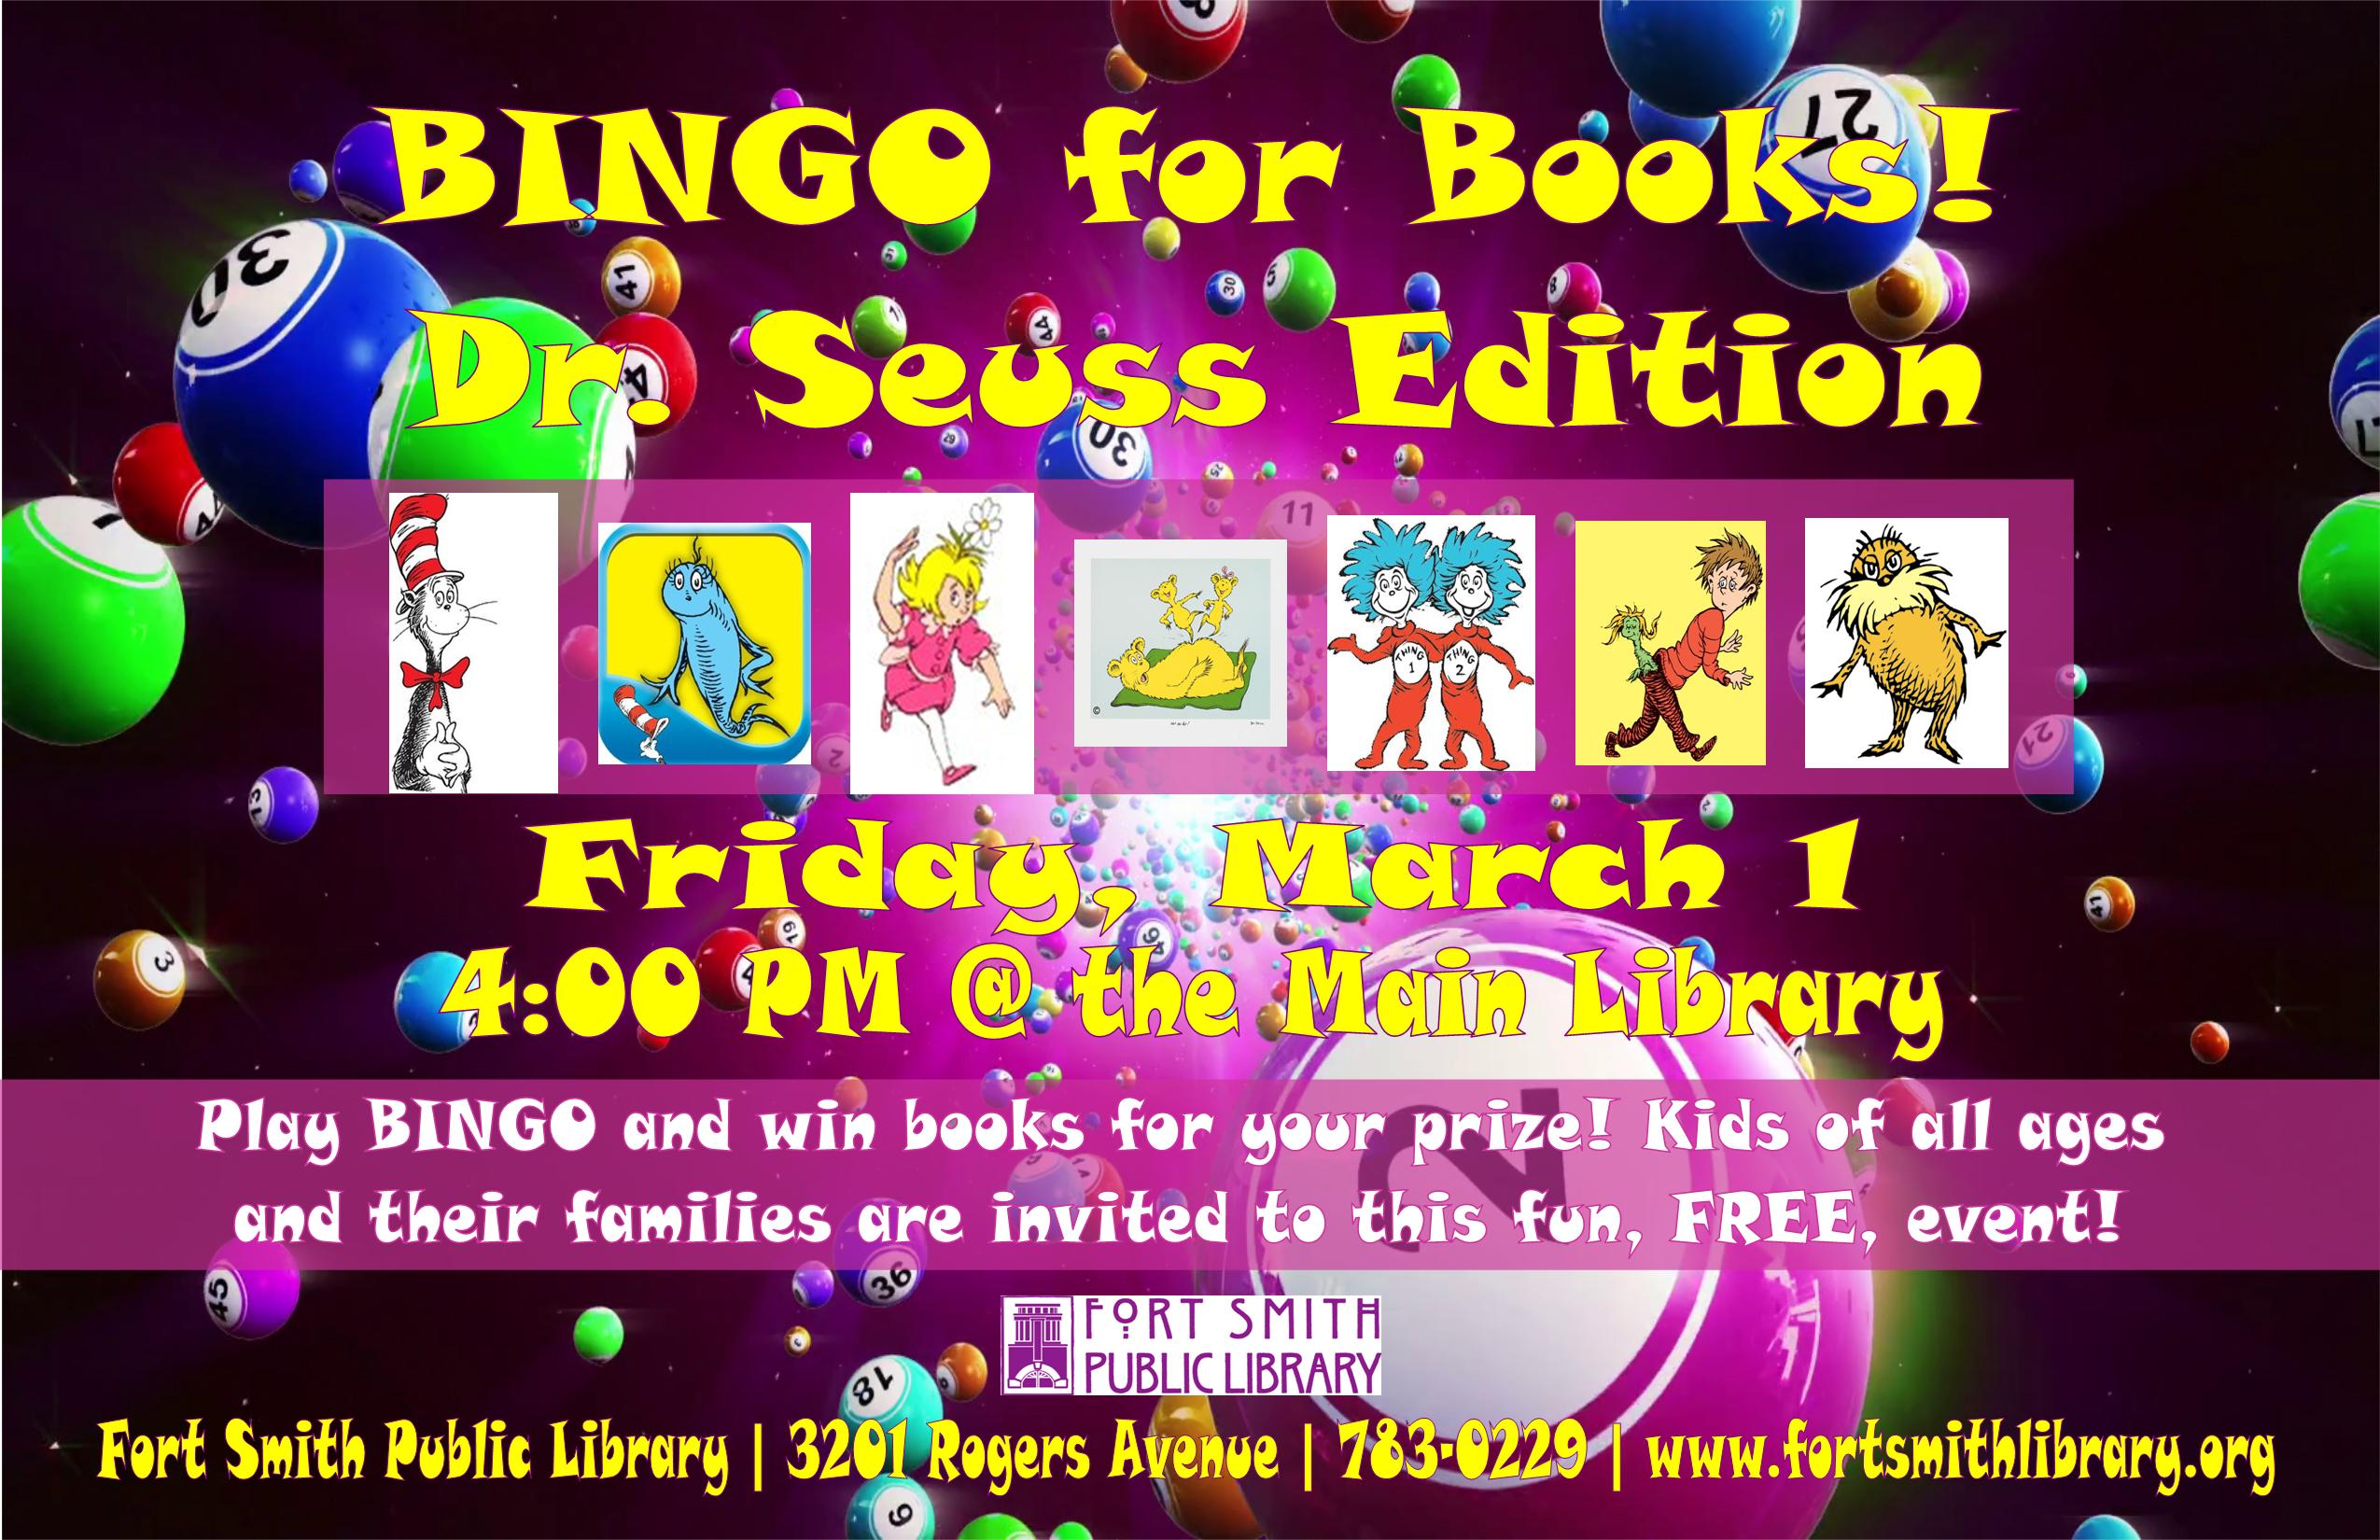 BINGO for Books event poster